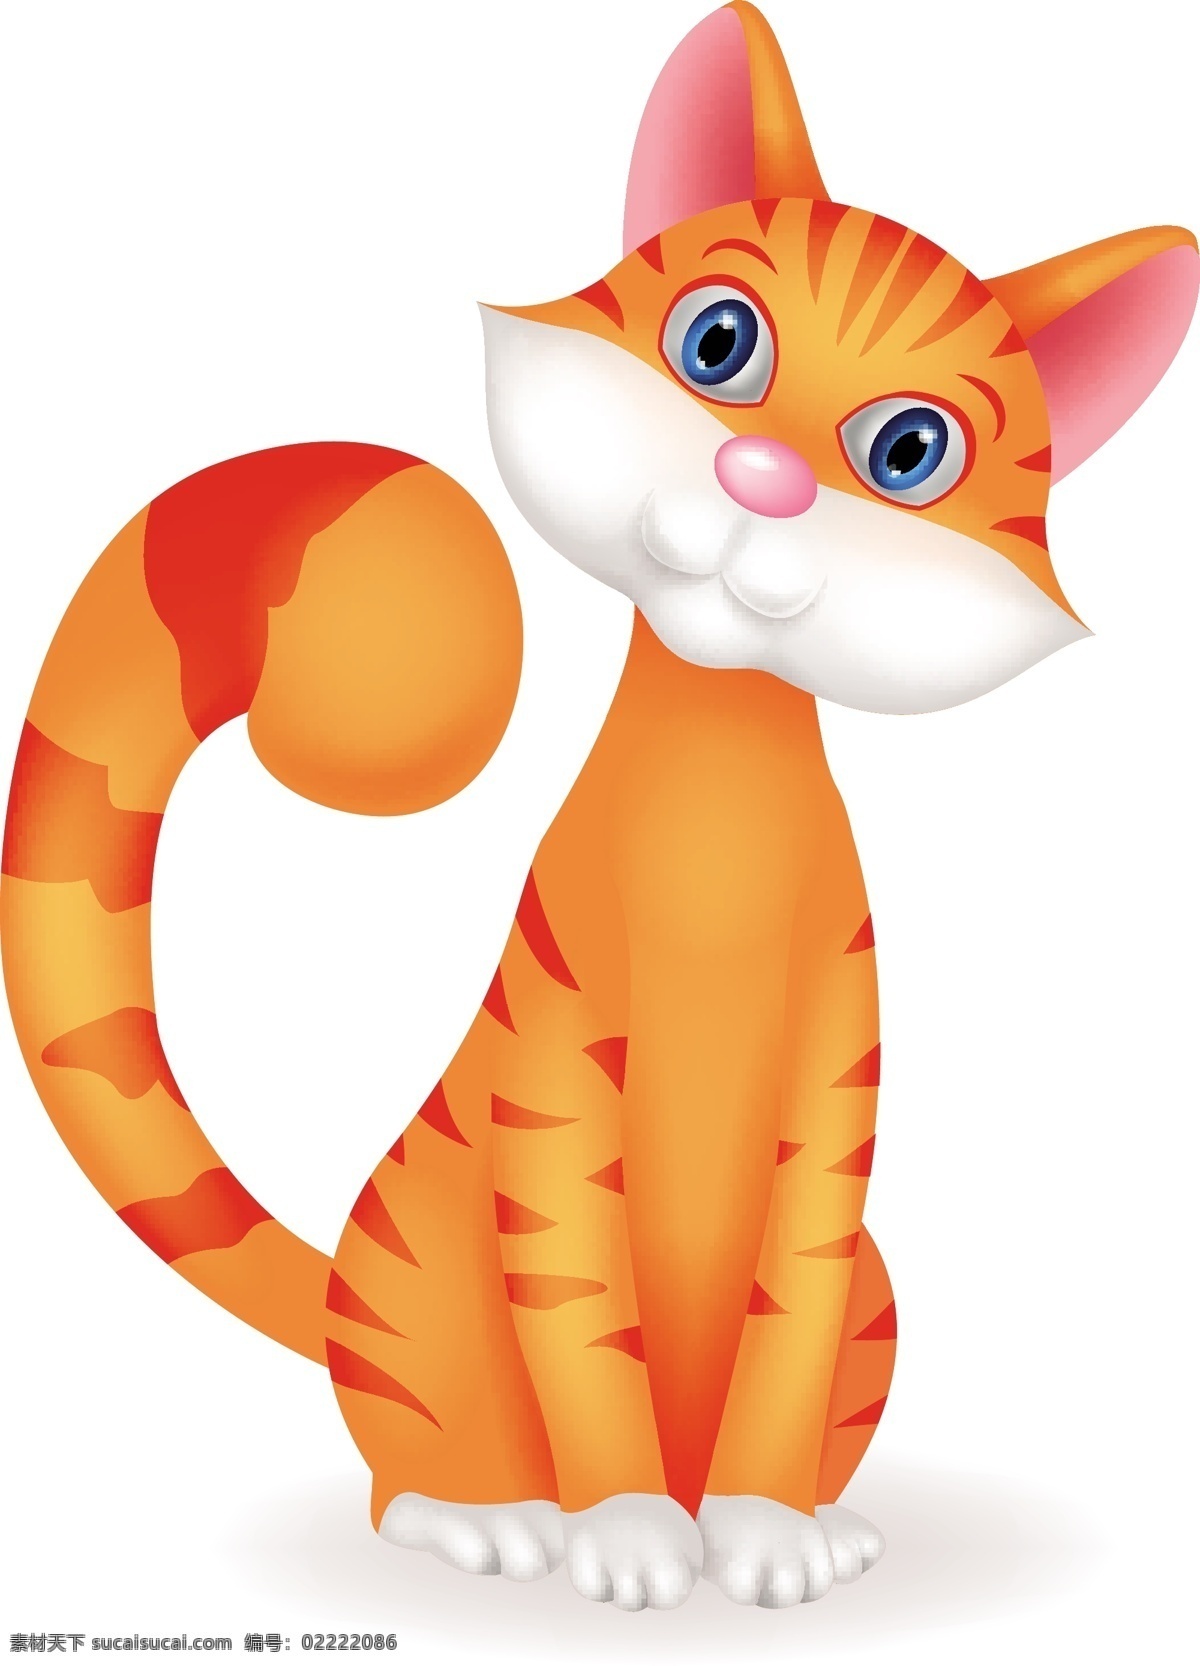 可爱 橙色 的卡 通 猫 矢量 卡通 矢量素材 背景素材 猫咪 设计素材